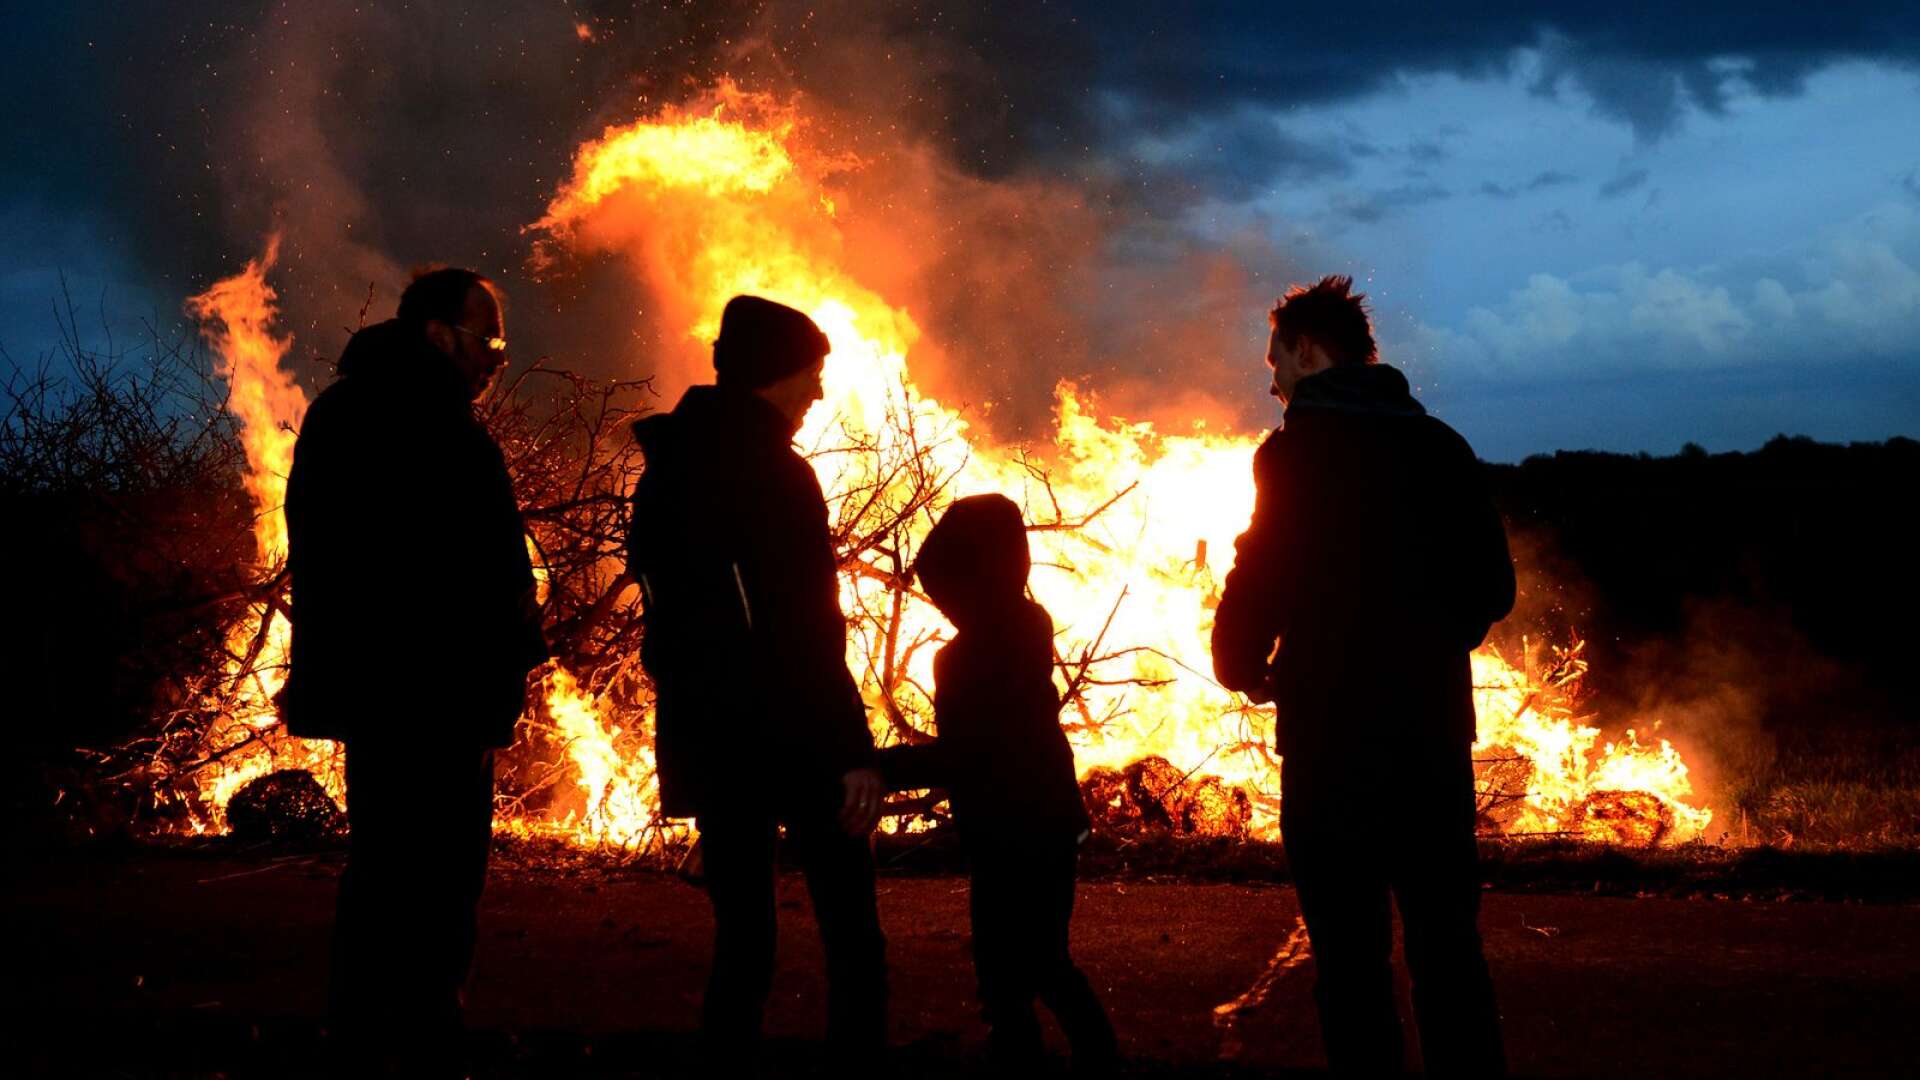 Valborg firas traditionsenligt med vårtal och musik men på grund av brandrisken blir det utan eldar.